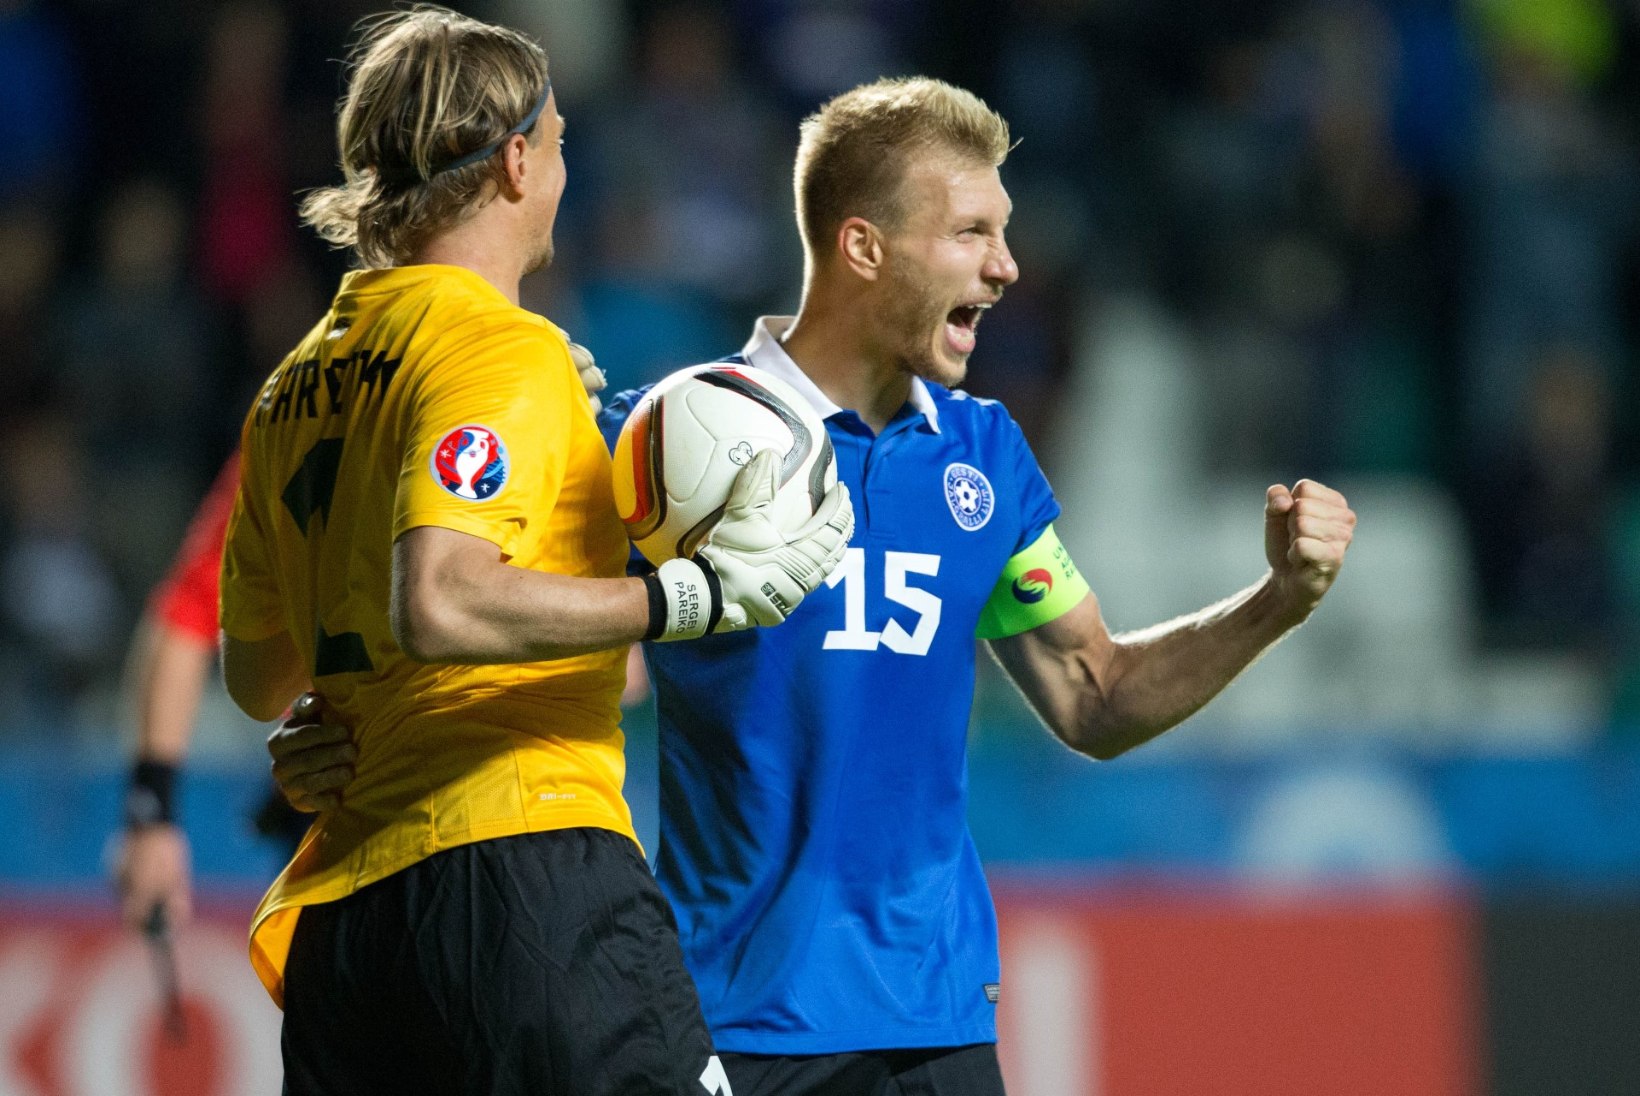 INTERVJUU | Ragnar Klavan: Eesti aasta jalgpalluriks valimine on väga tore tunnustus!